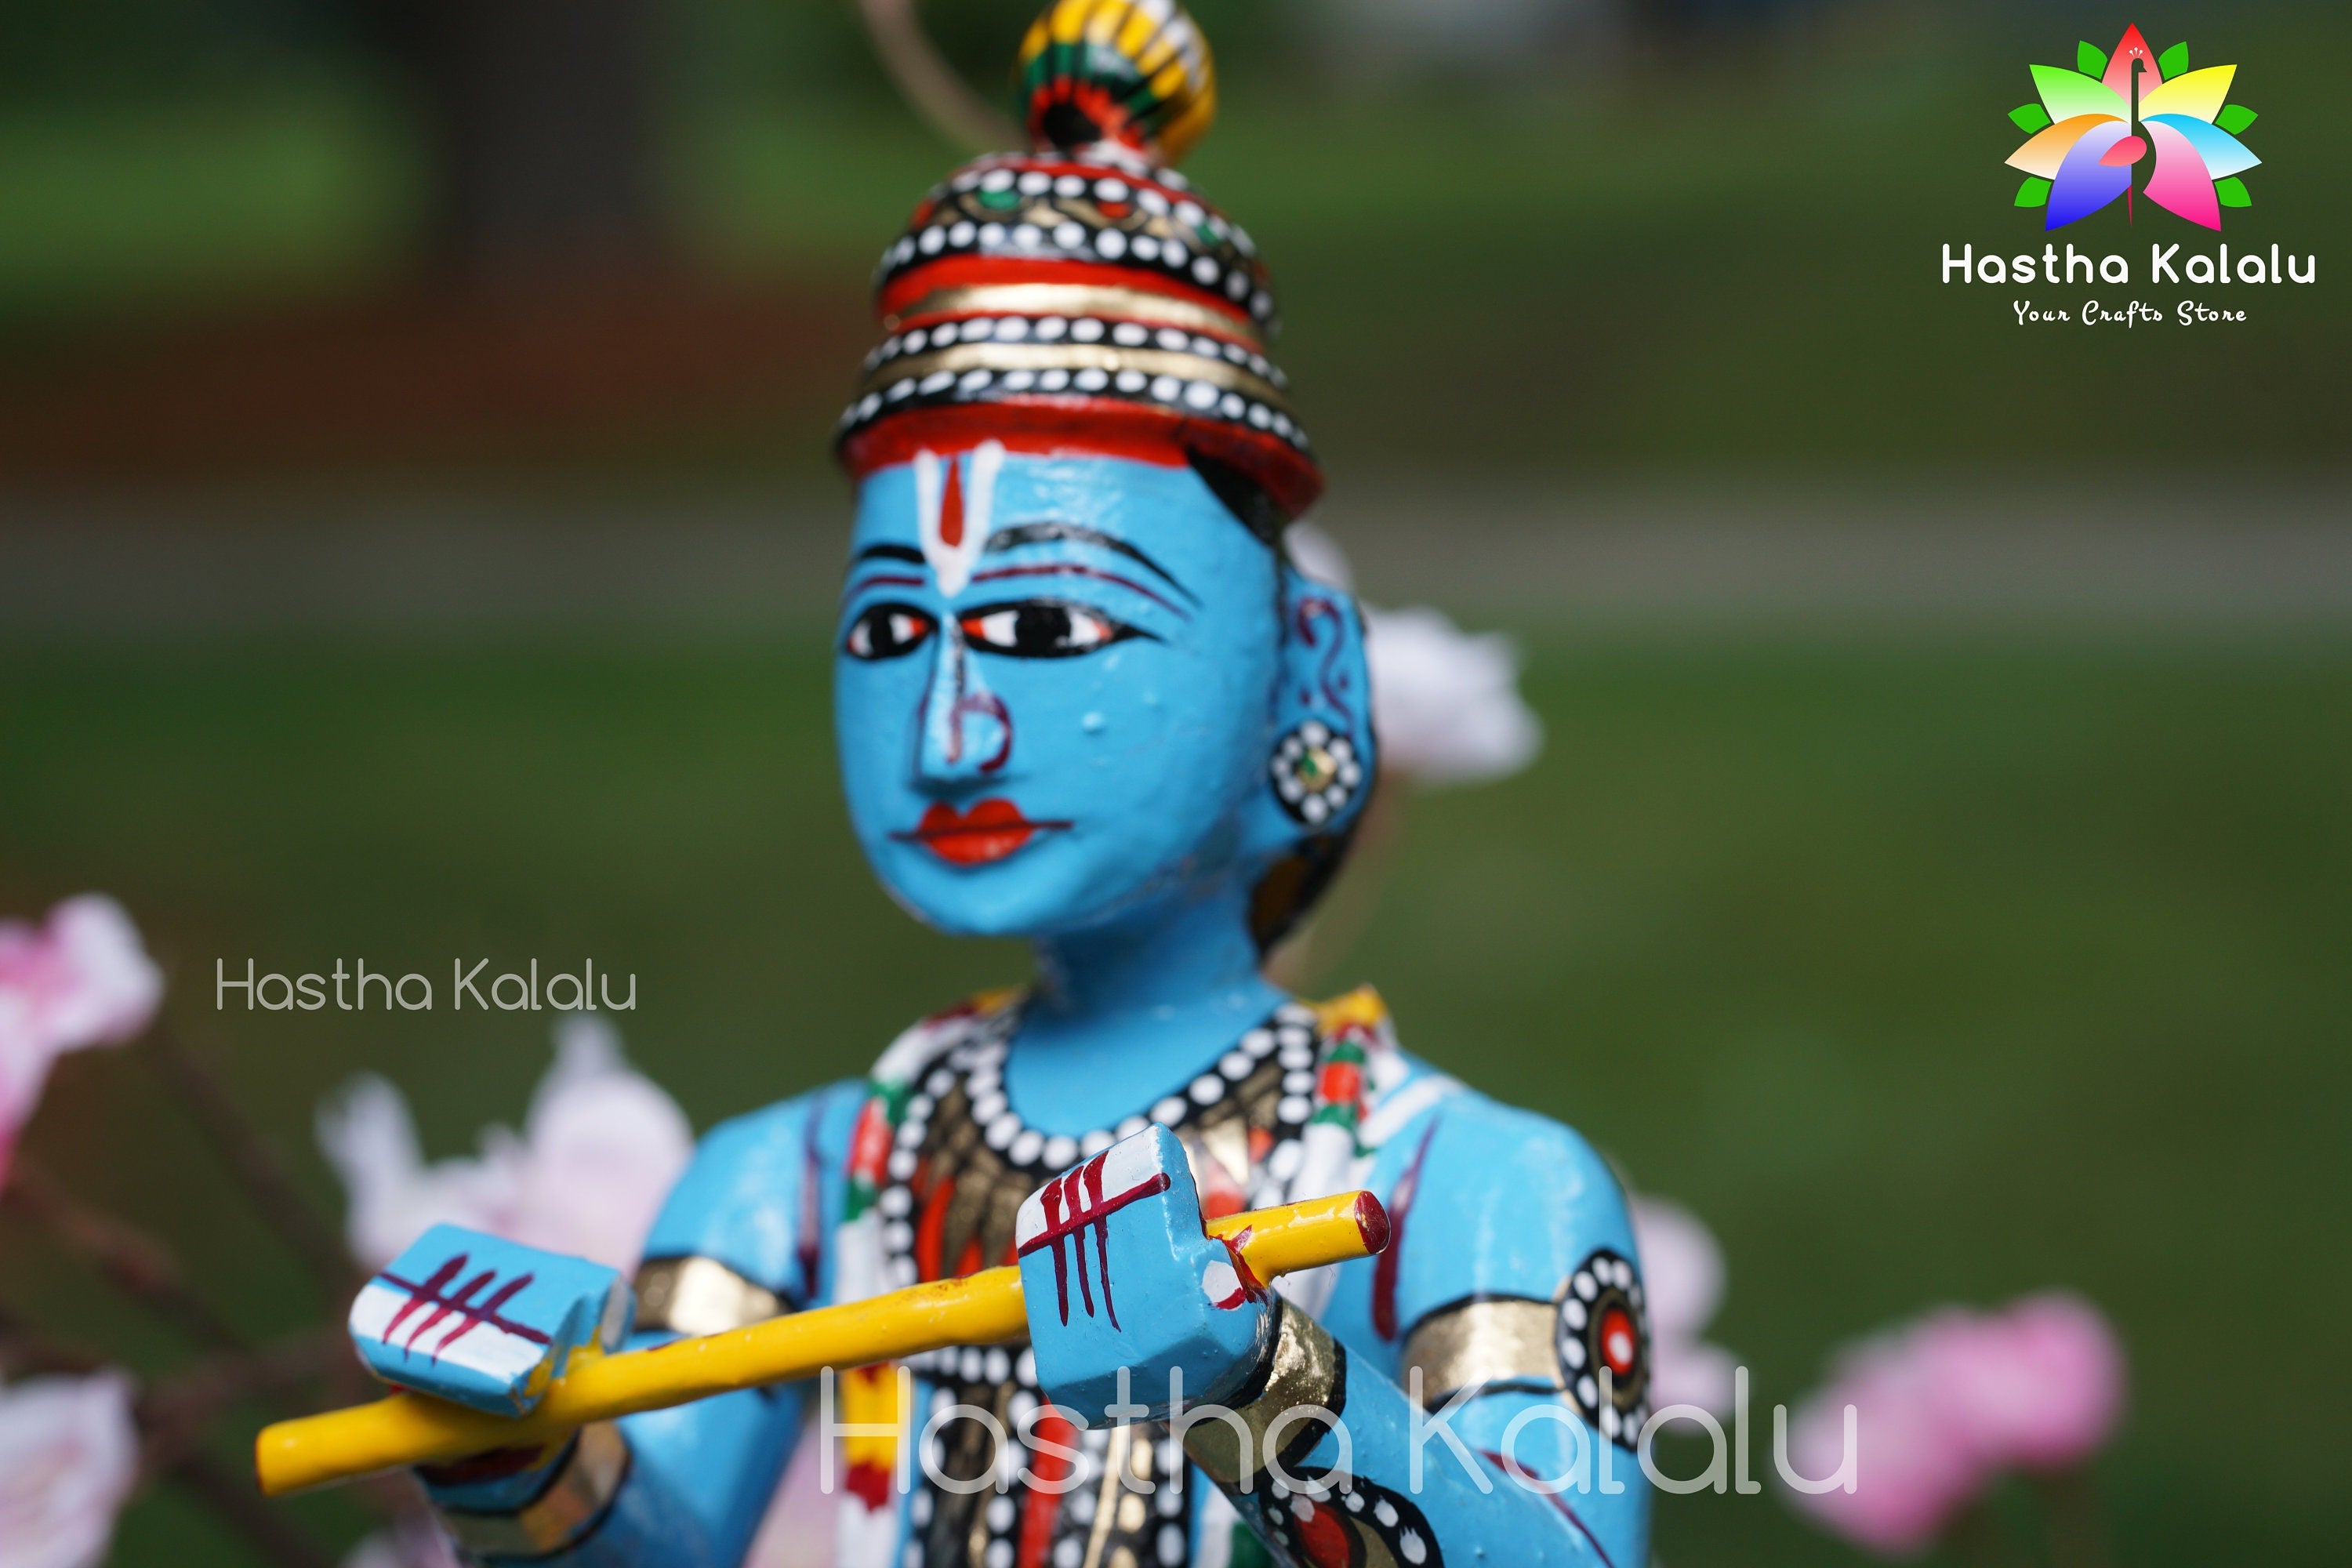 Lord Shri Krishna Figurine | Krishna playing Lute | Venu Gaana Krishna